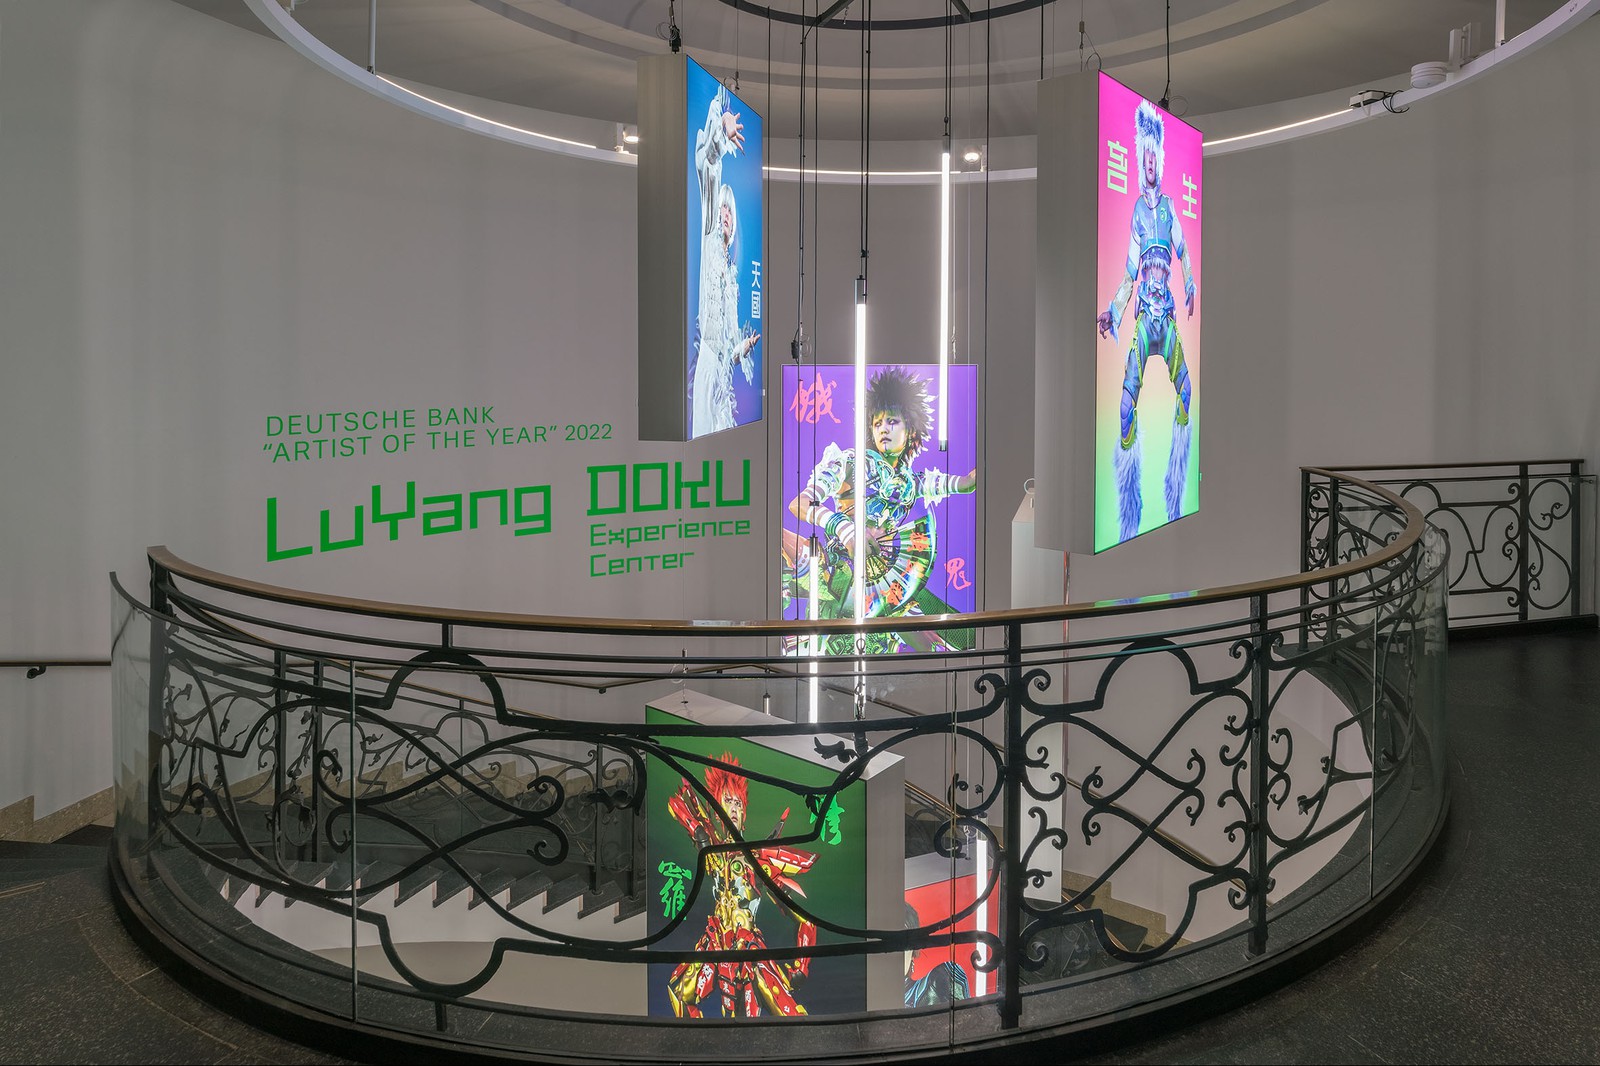 Artist of the Year 2022, Deutsche Bank, LuYang: Experience Center, PalaisPopulaire, Berlin, 2022